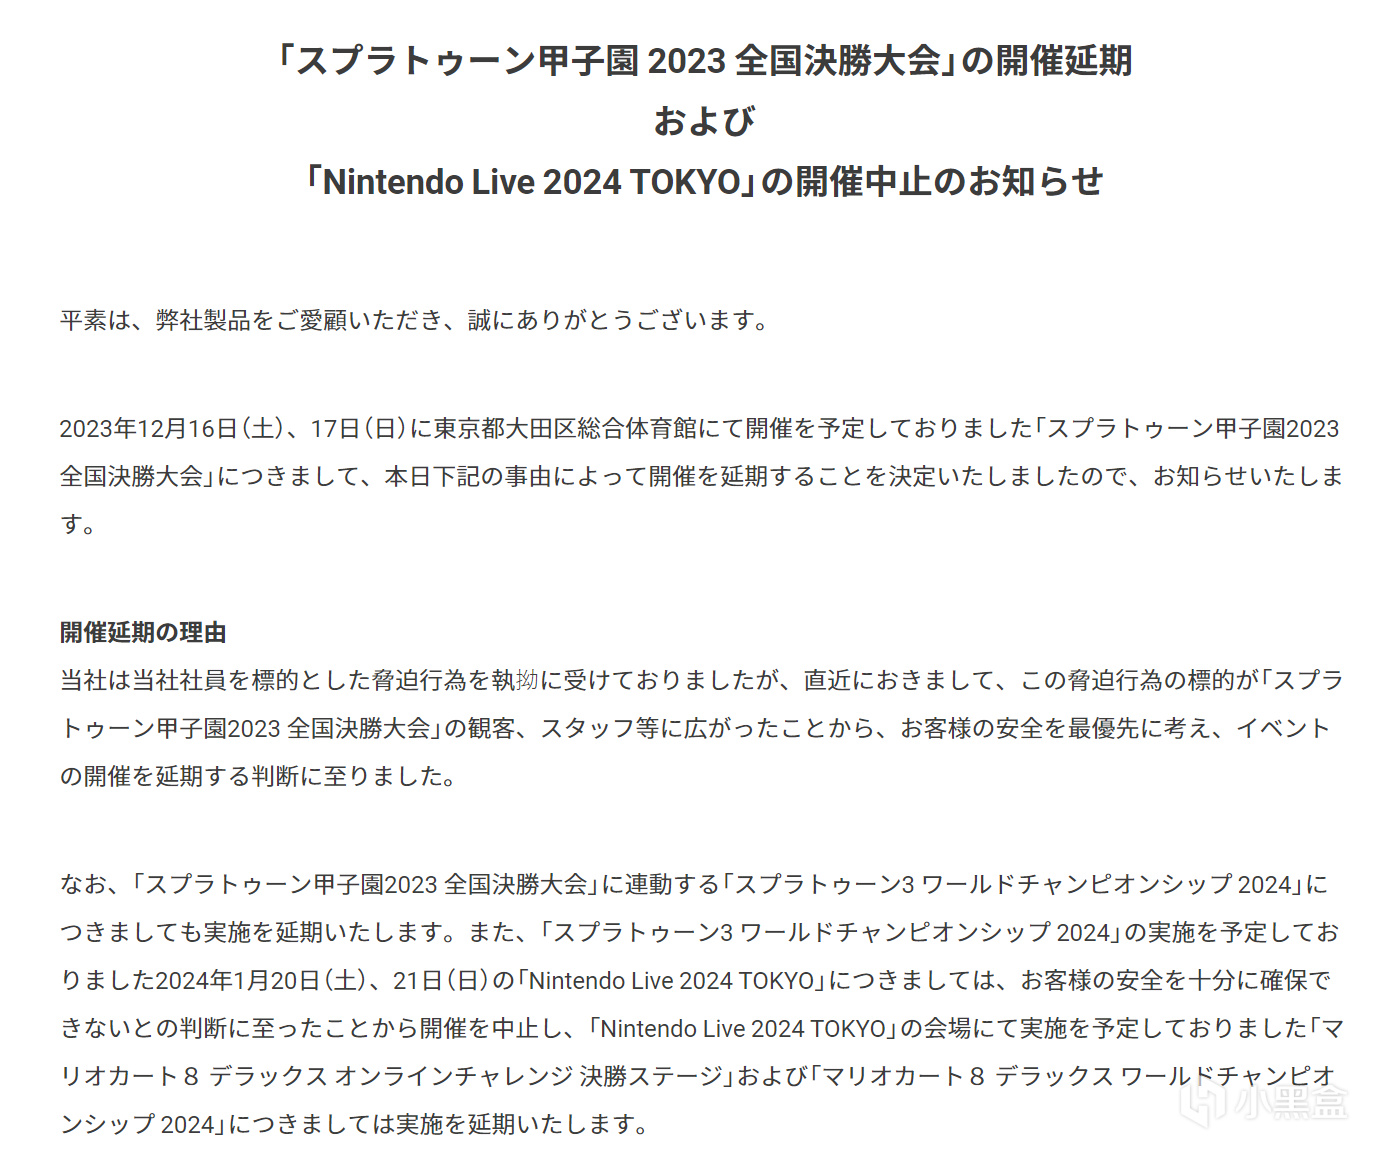 【主機遊戲】直接取消! Nintendo Live 2024 TOKYO 因收到持續恐嚇宣佈停辦